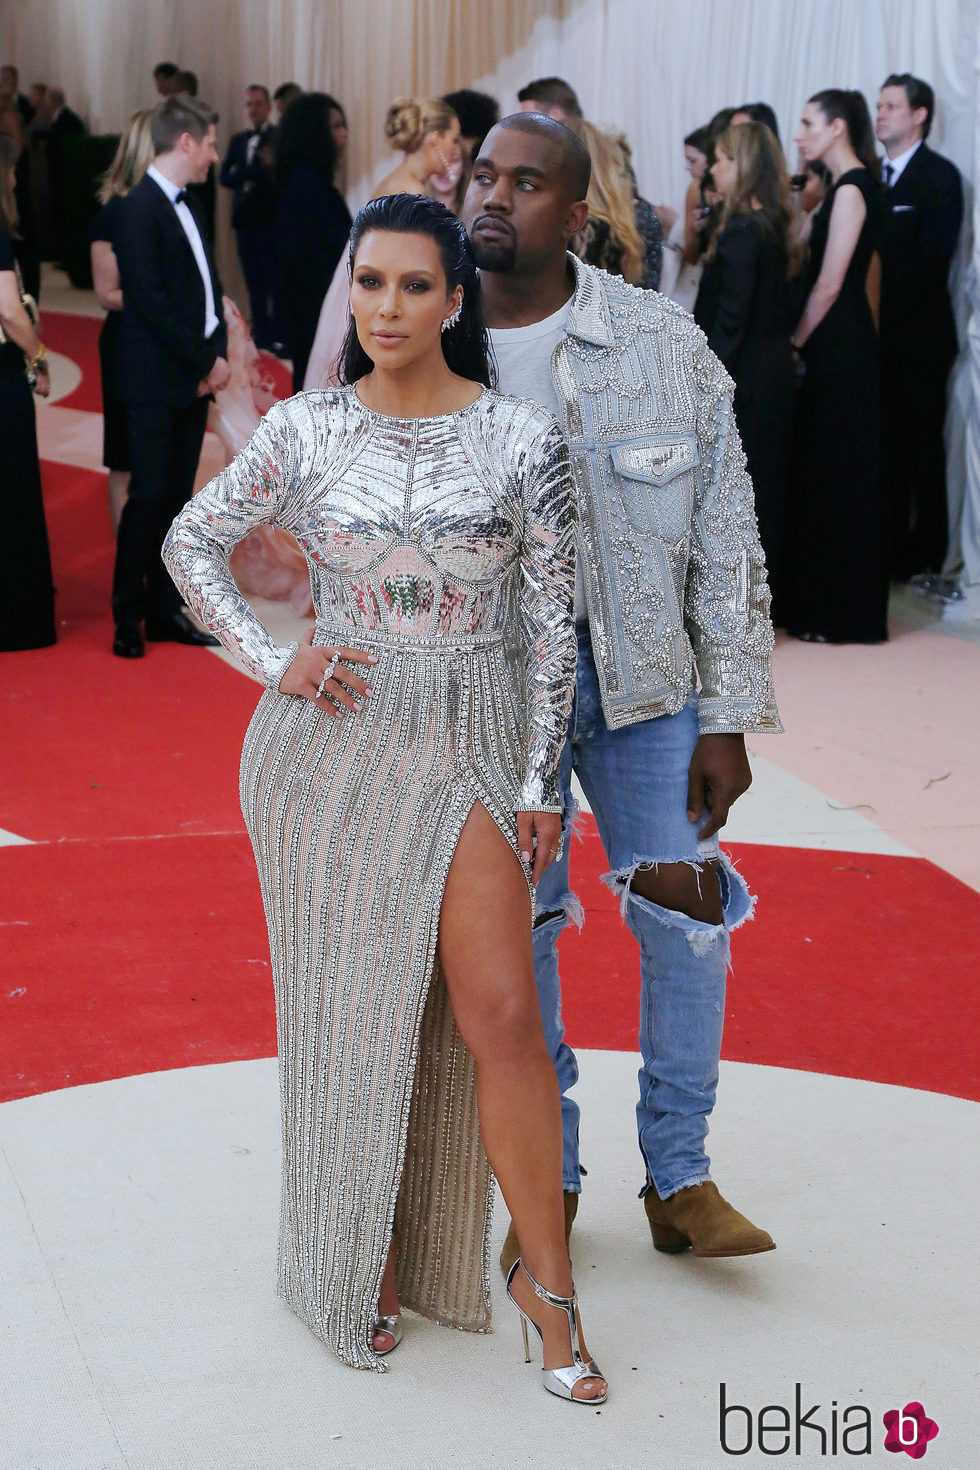 Kim Kardashian y Kanye West en la alfombra roja de la Gala Met 2016